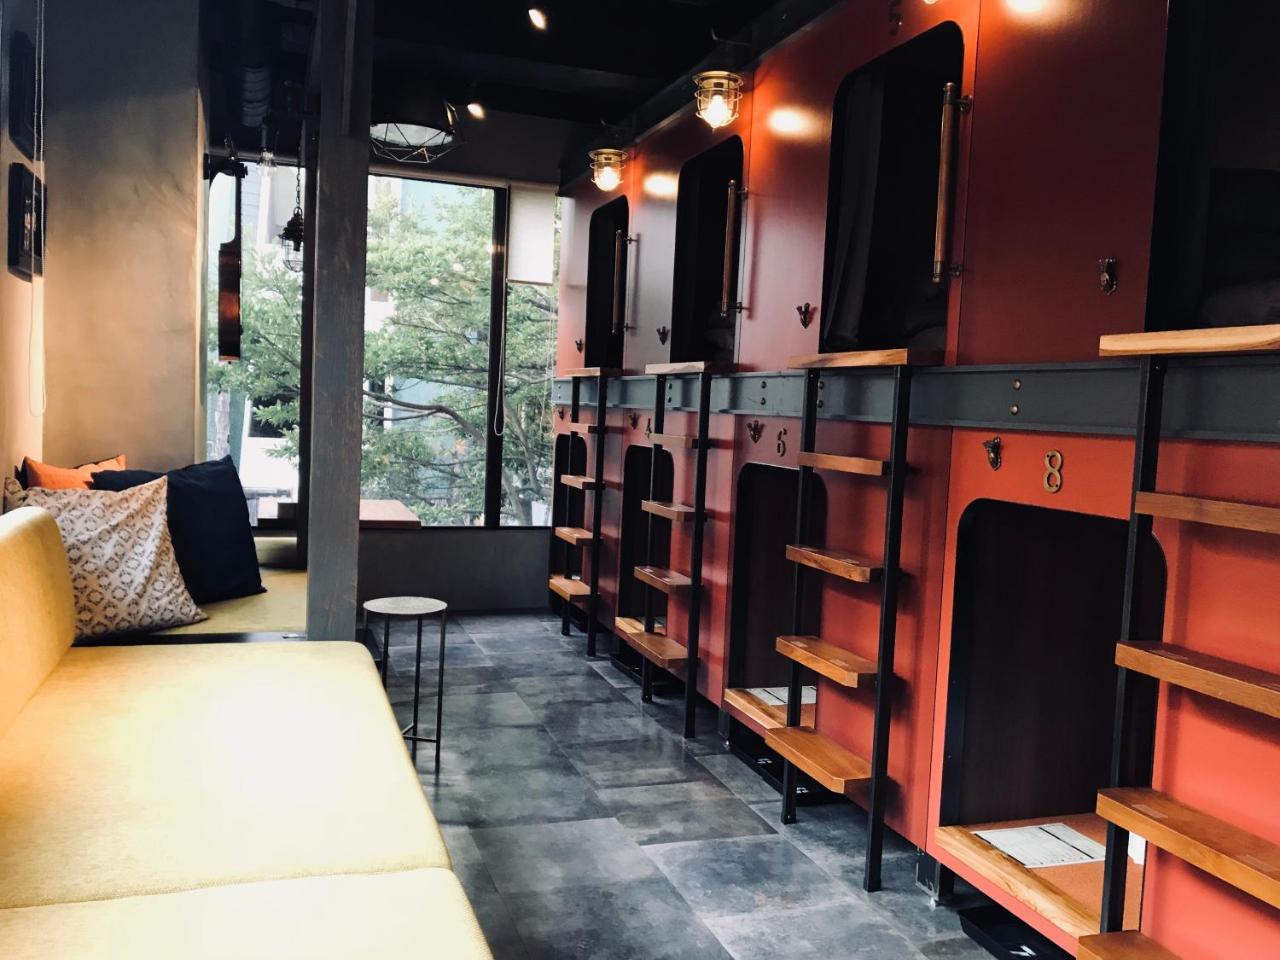 يوكوهامَ Hare-Tabi Sauna&Inn Yokohama المظهر الخارجي الصورة